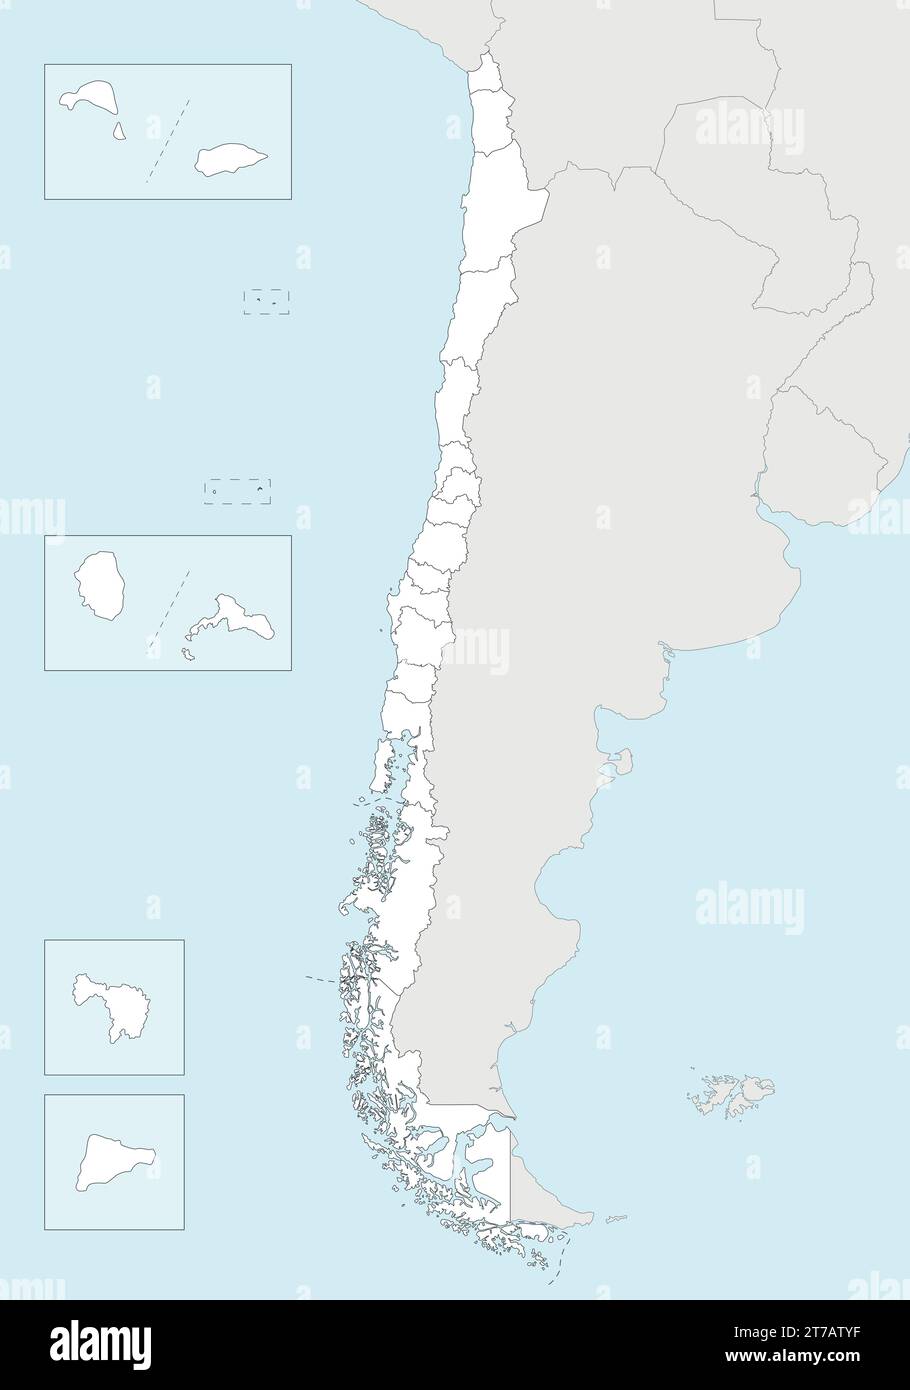 Carte vierge vectorielle du Chili avec les régions et territoires et les divisions administratives, et les pays et territoires voisins. Modifiable et clair Illustration de Vecteur